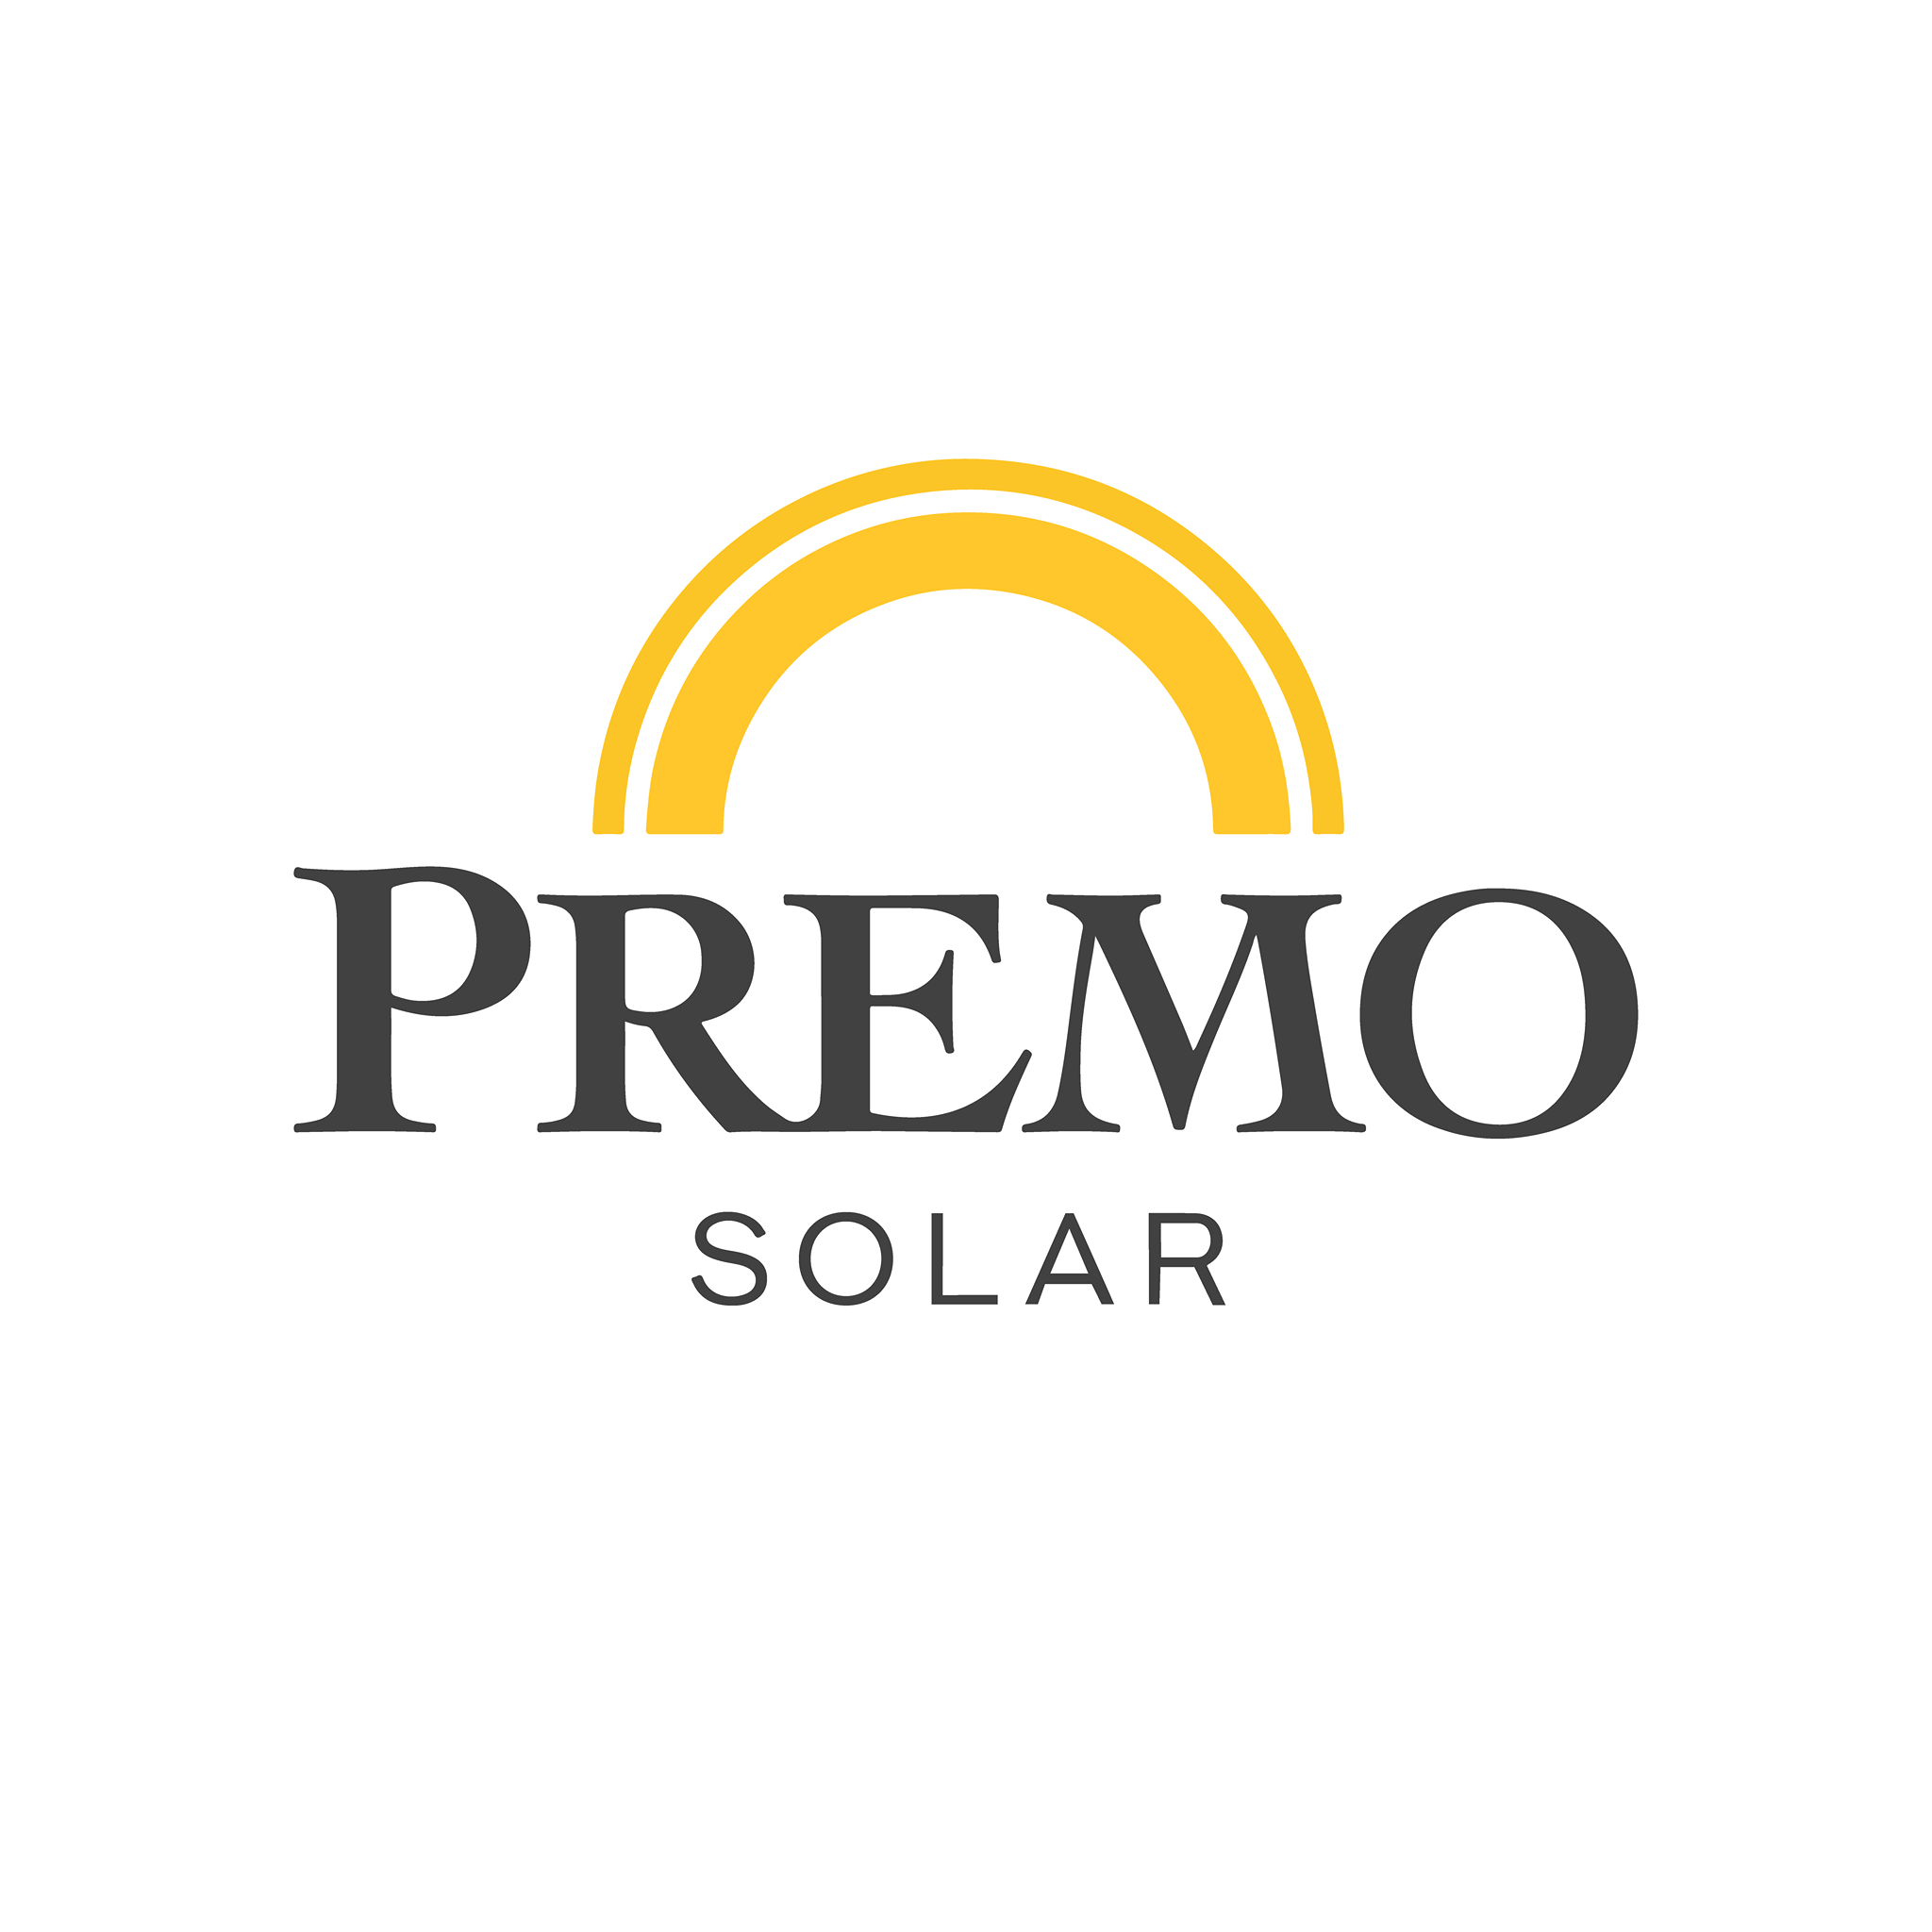 Premo Solar logo